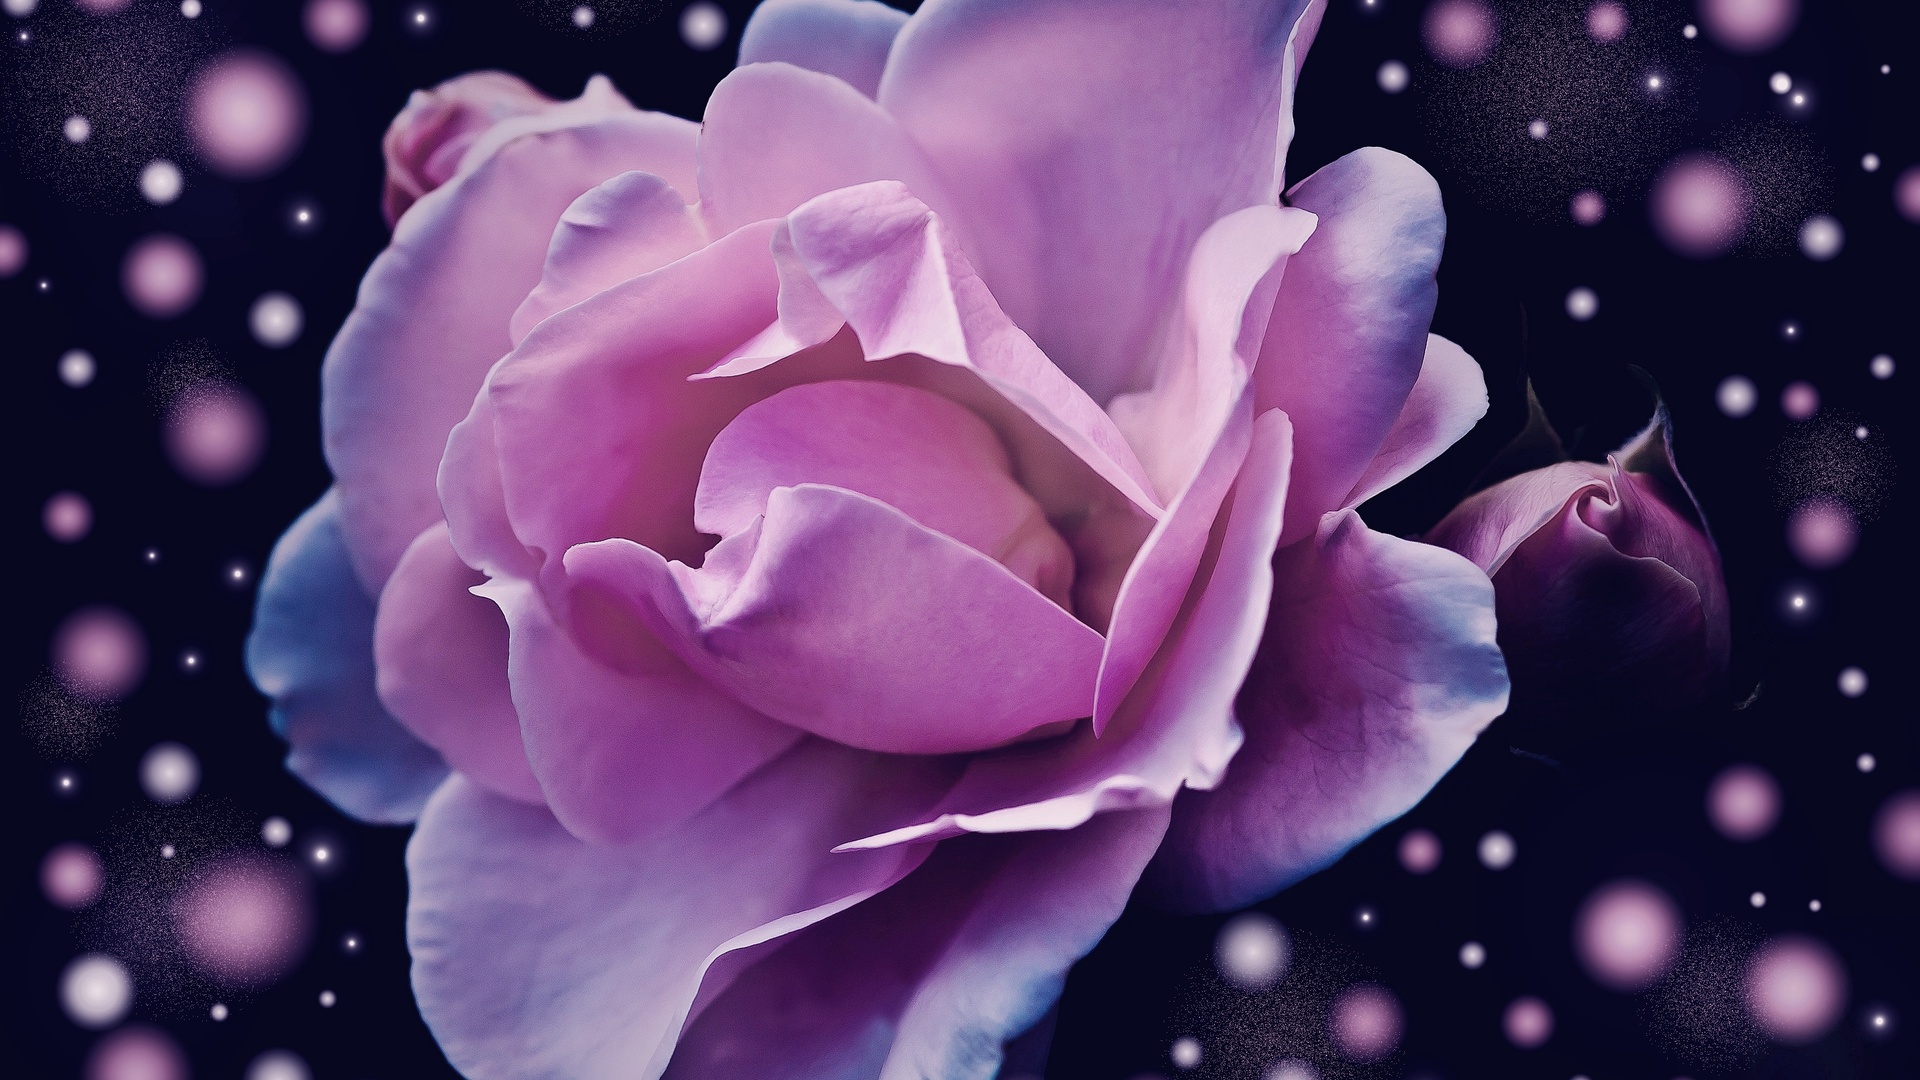 缤纷多彩粉红色玫瑰花幻想梦幻4k壁纸壁纸